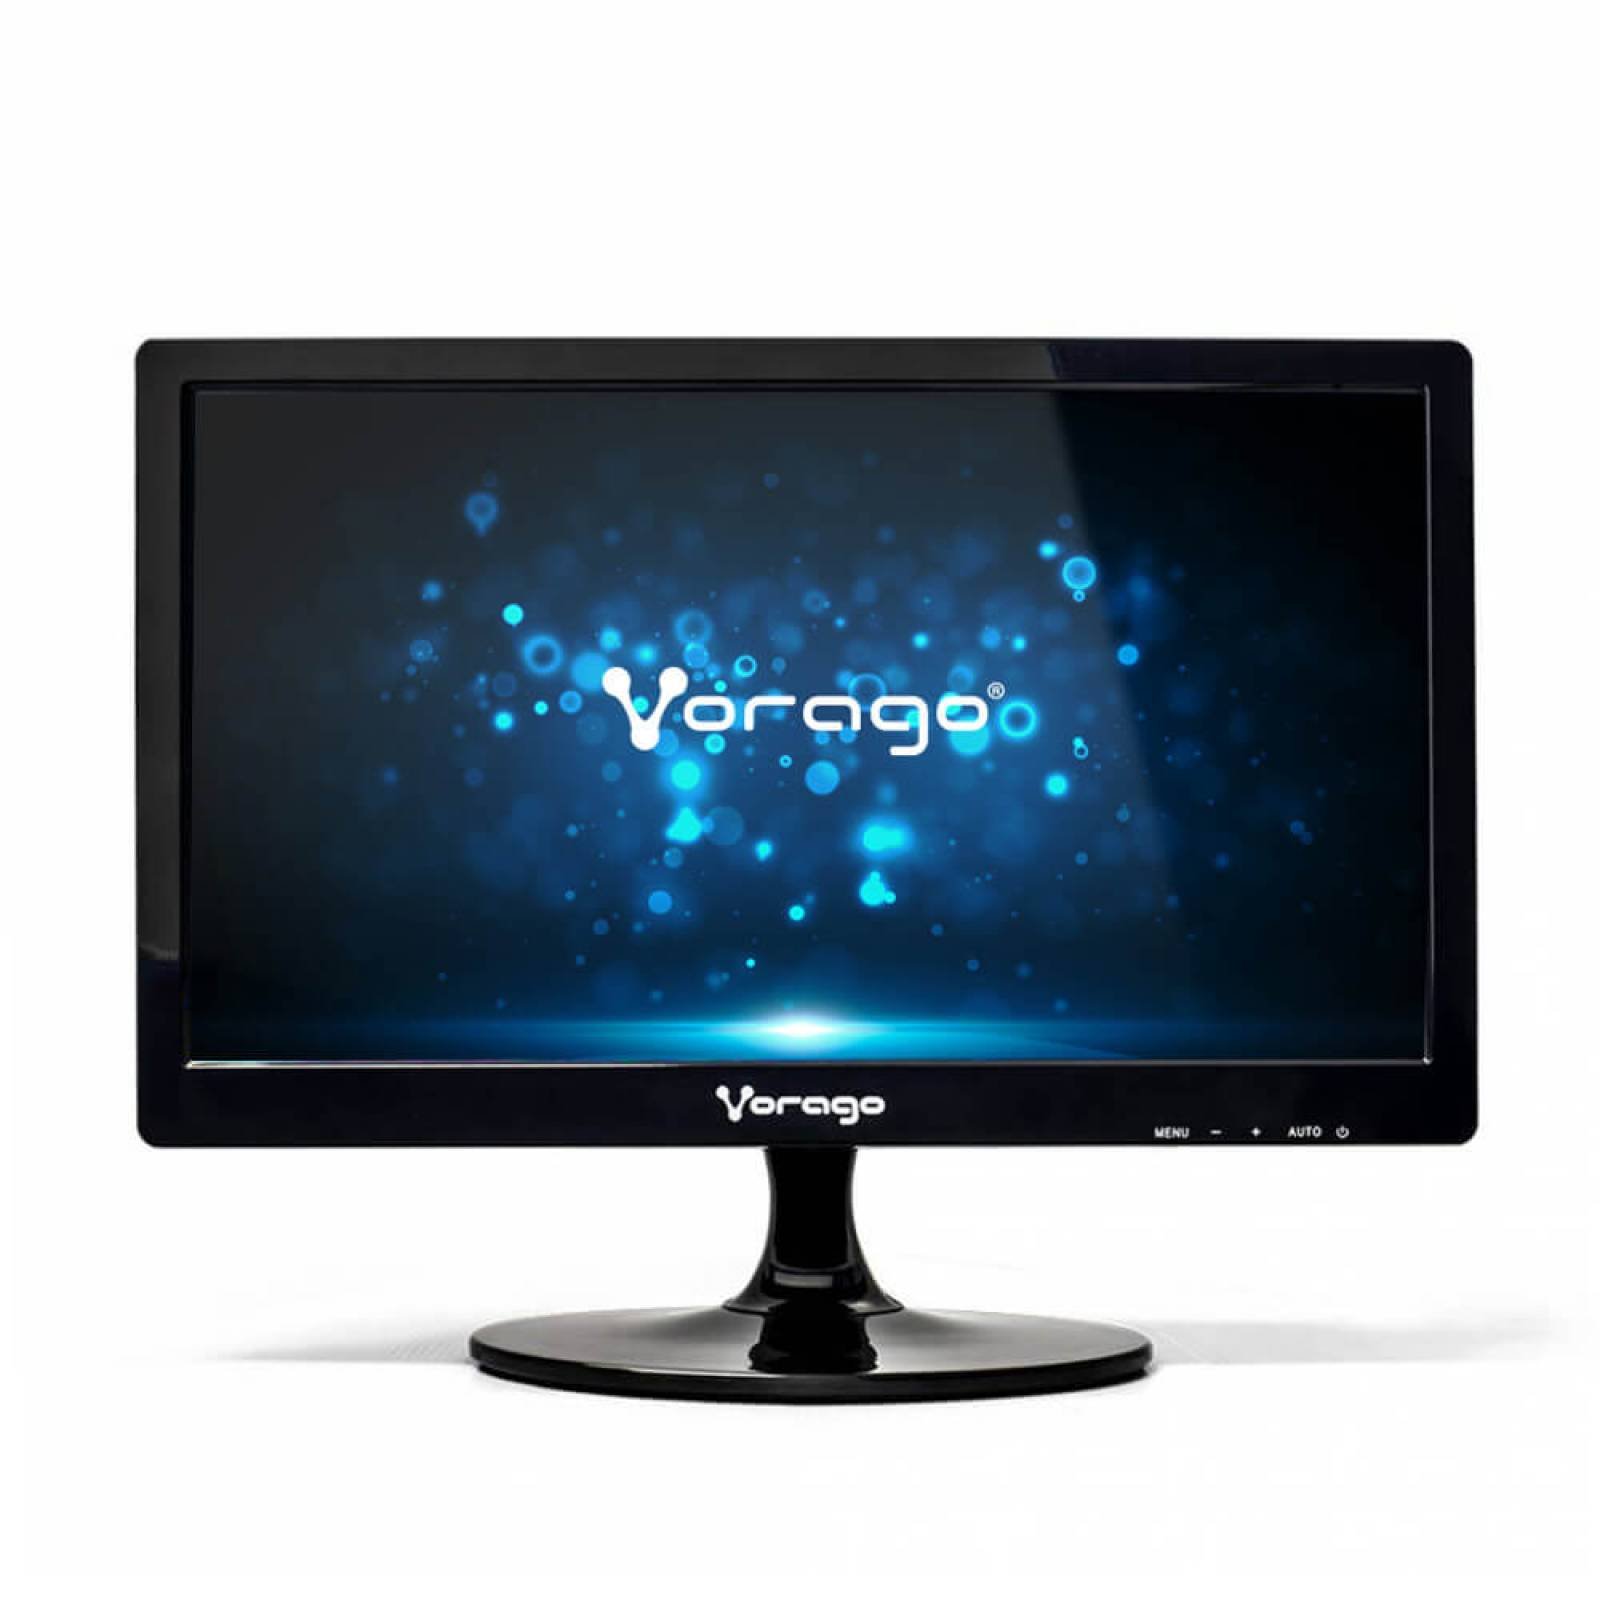 Monitor 15.6 Vorago HD 2ms VGA 1000:1 LED-W15-200